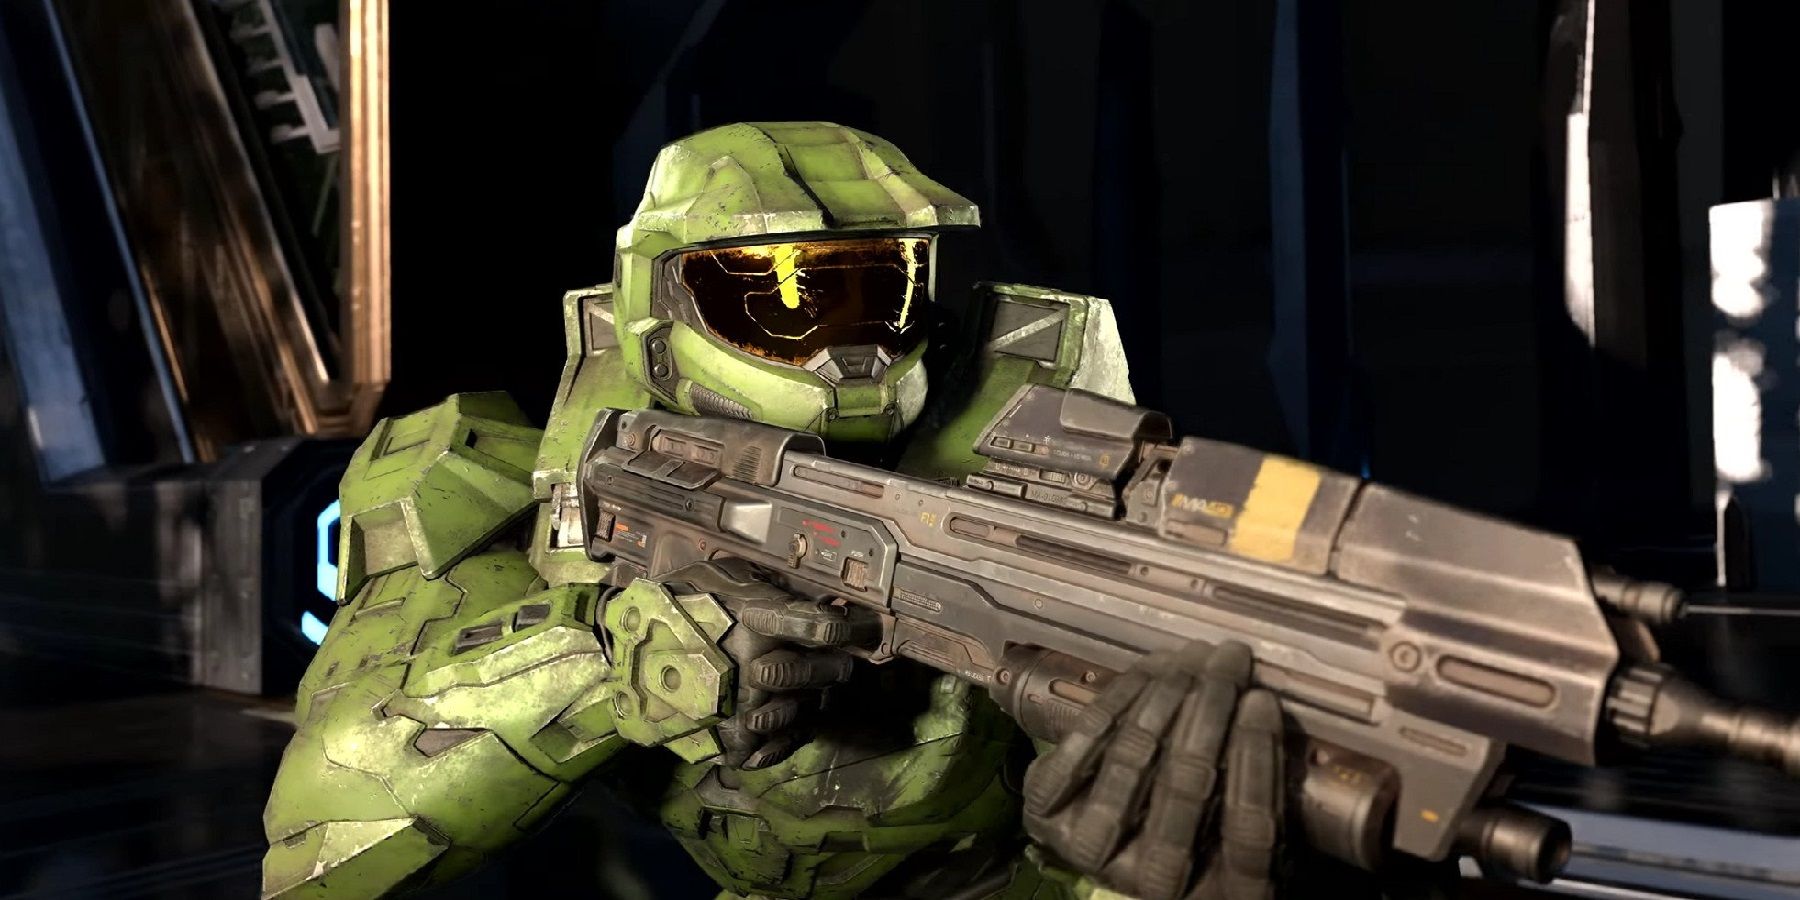 Kampaň spoločnosti Halo Infinite’s Co-Op oznámila 343 priemyselných odvetví